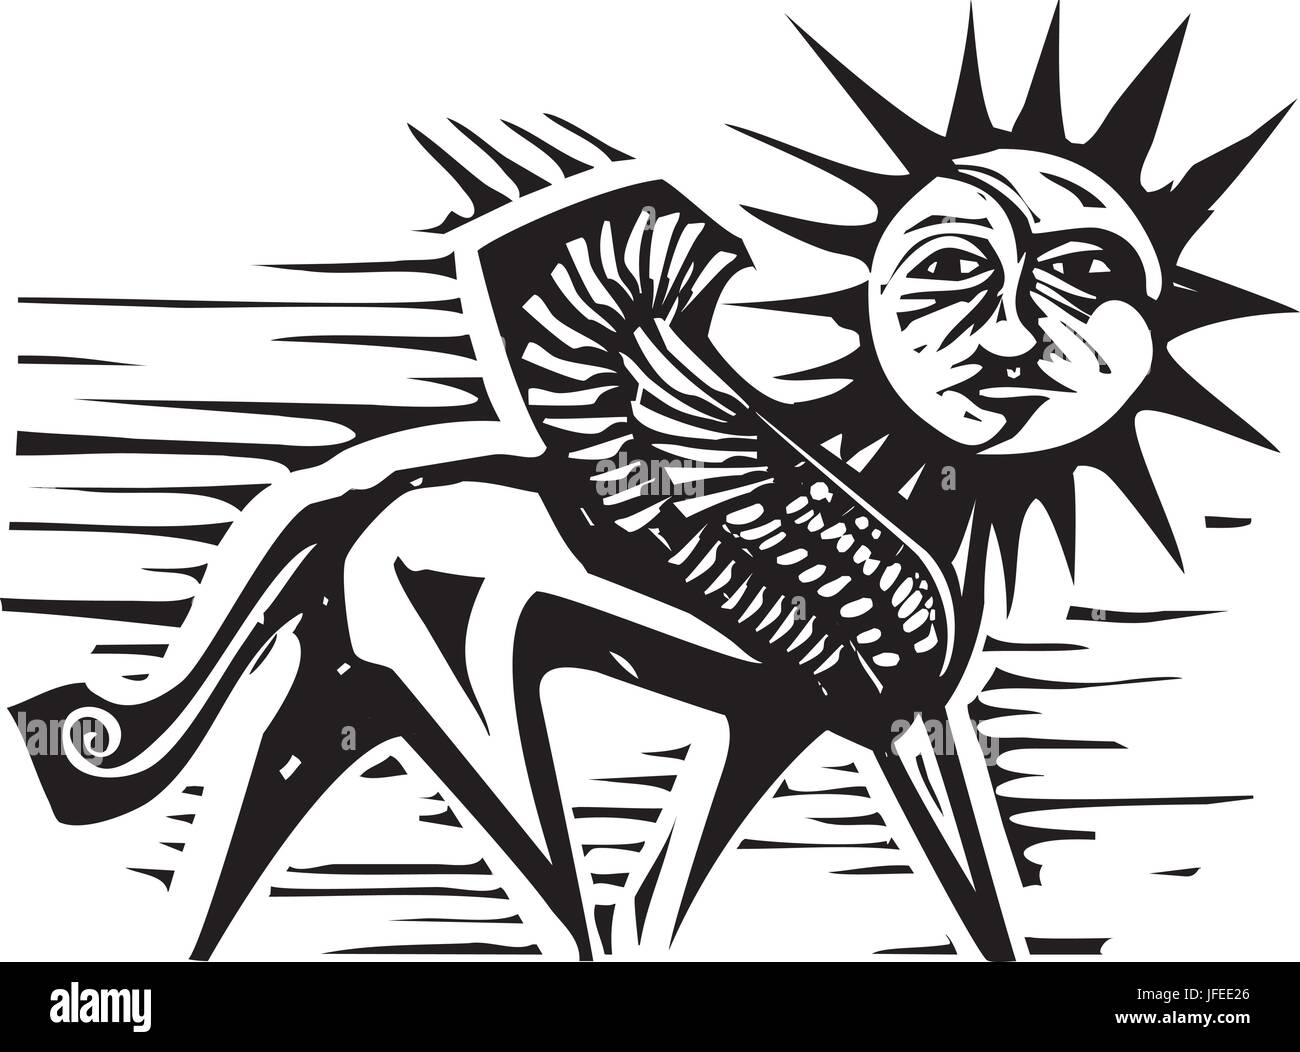 Holzschnitt-Stil Bild von Sonne und Mond Gesicht auf den Körper eines Vogel Greif Stock Vektor